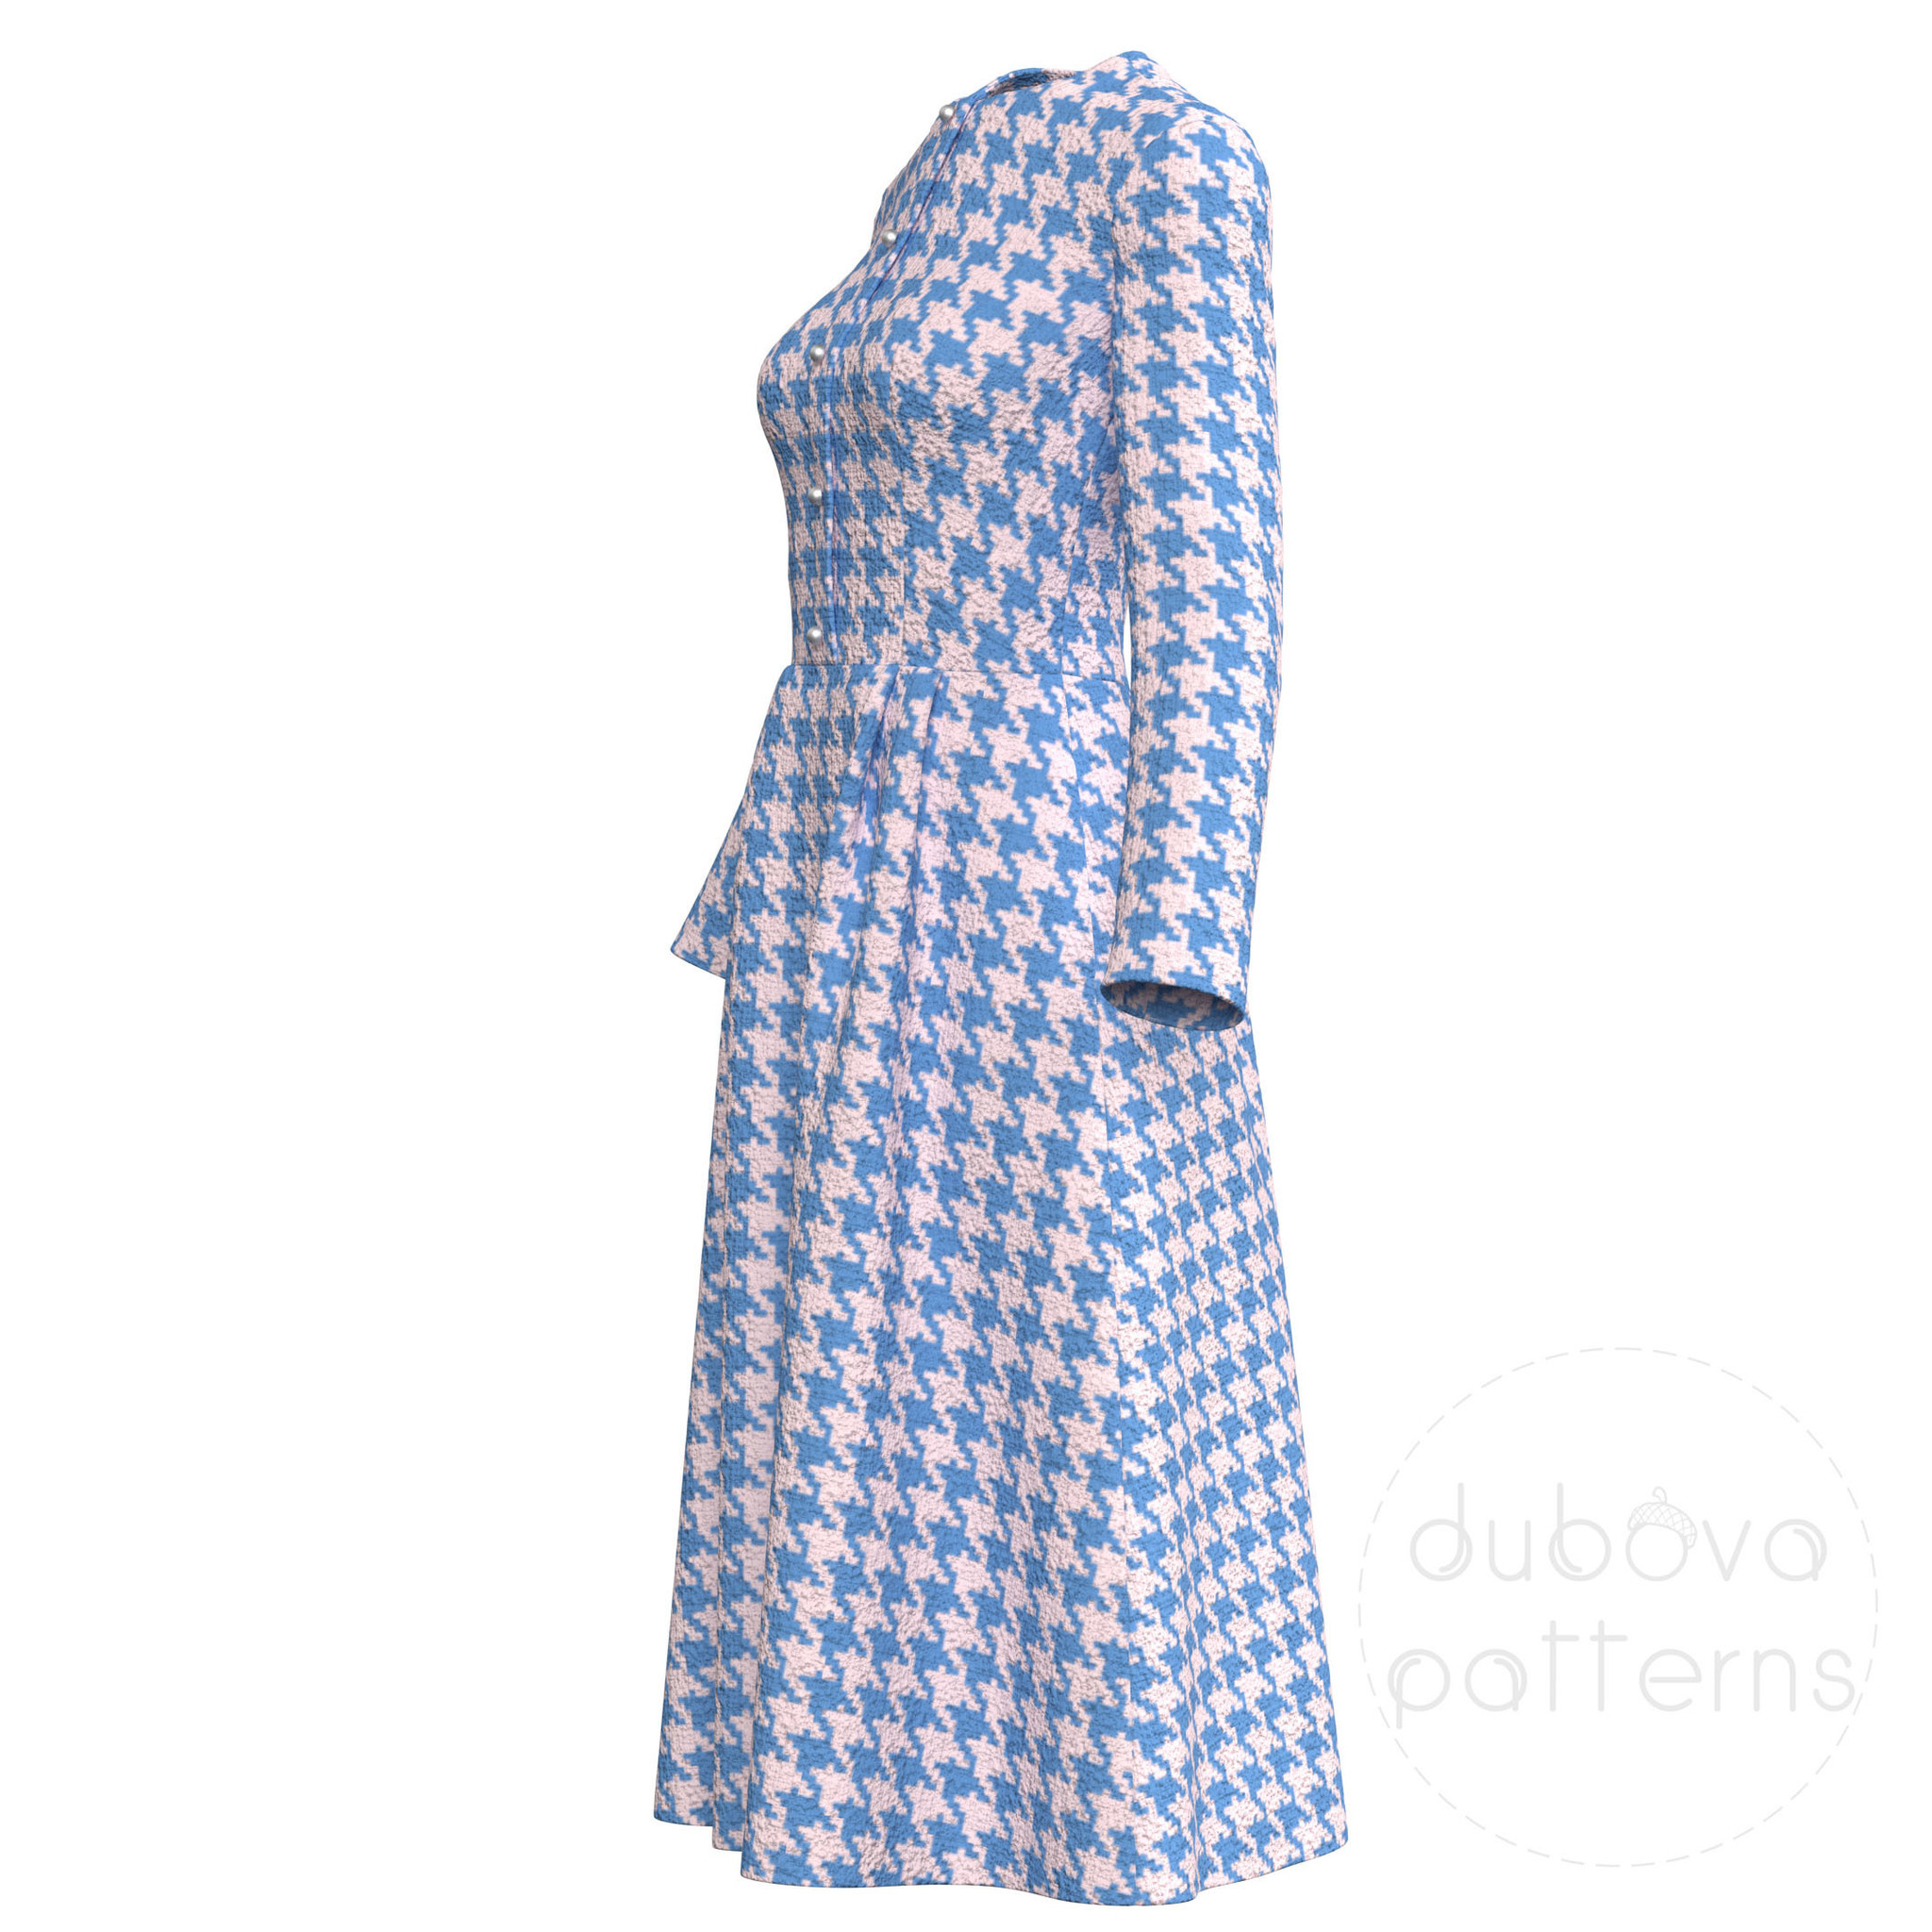 Выкройка ретро-платья в горошек в стиле 50-х годов